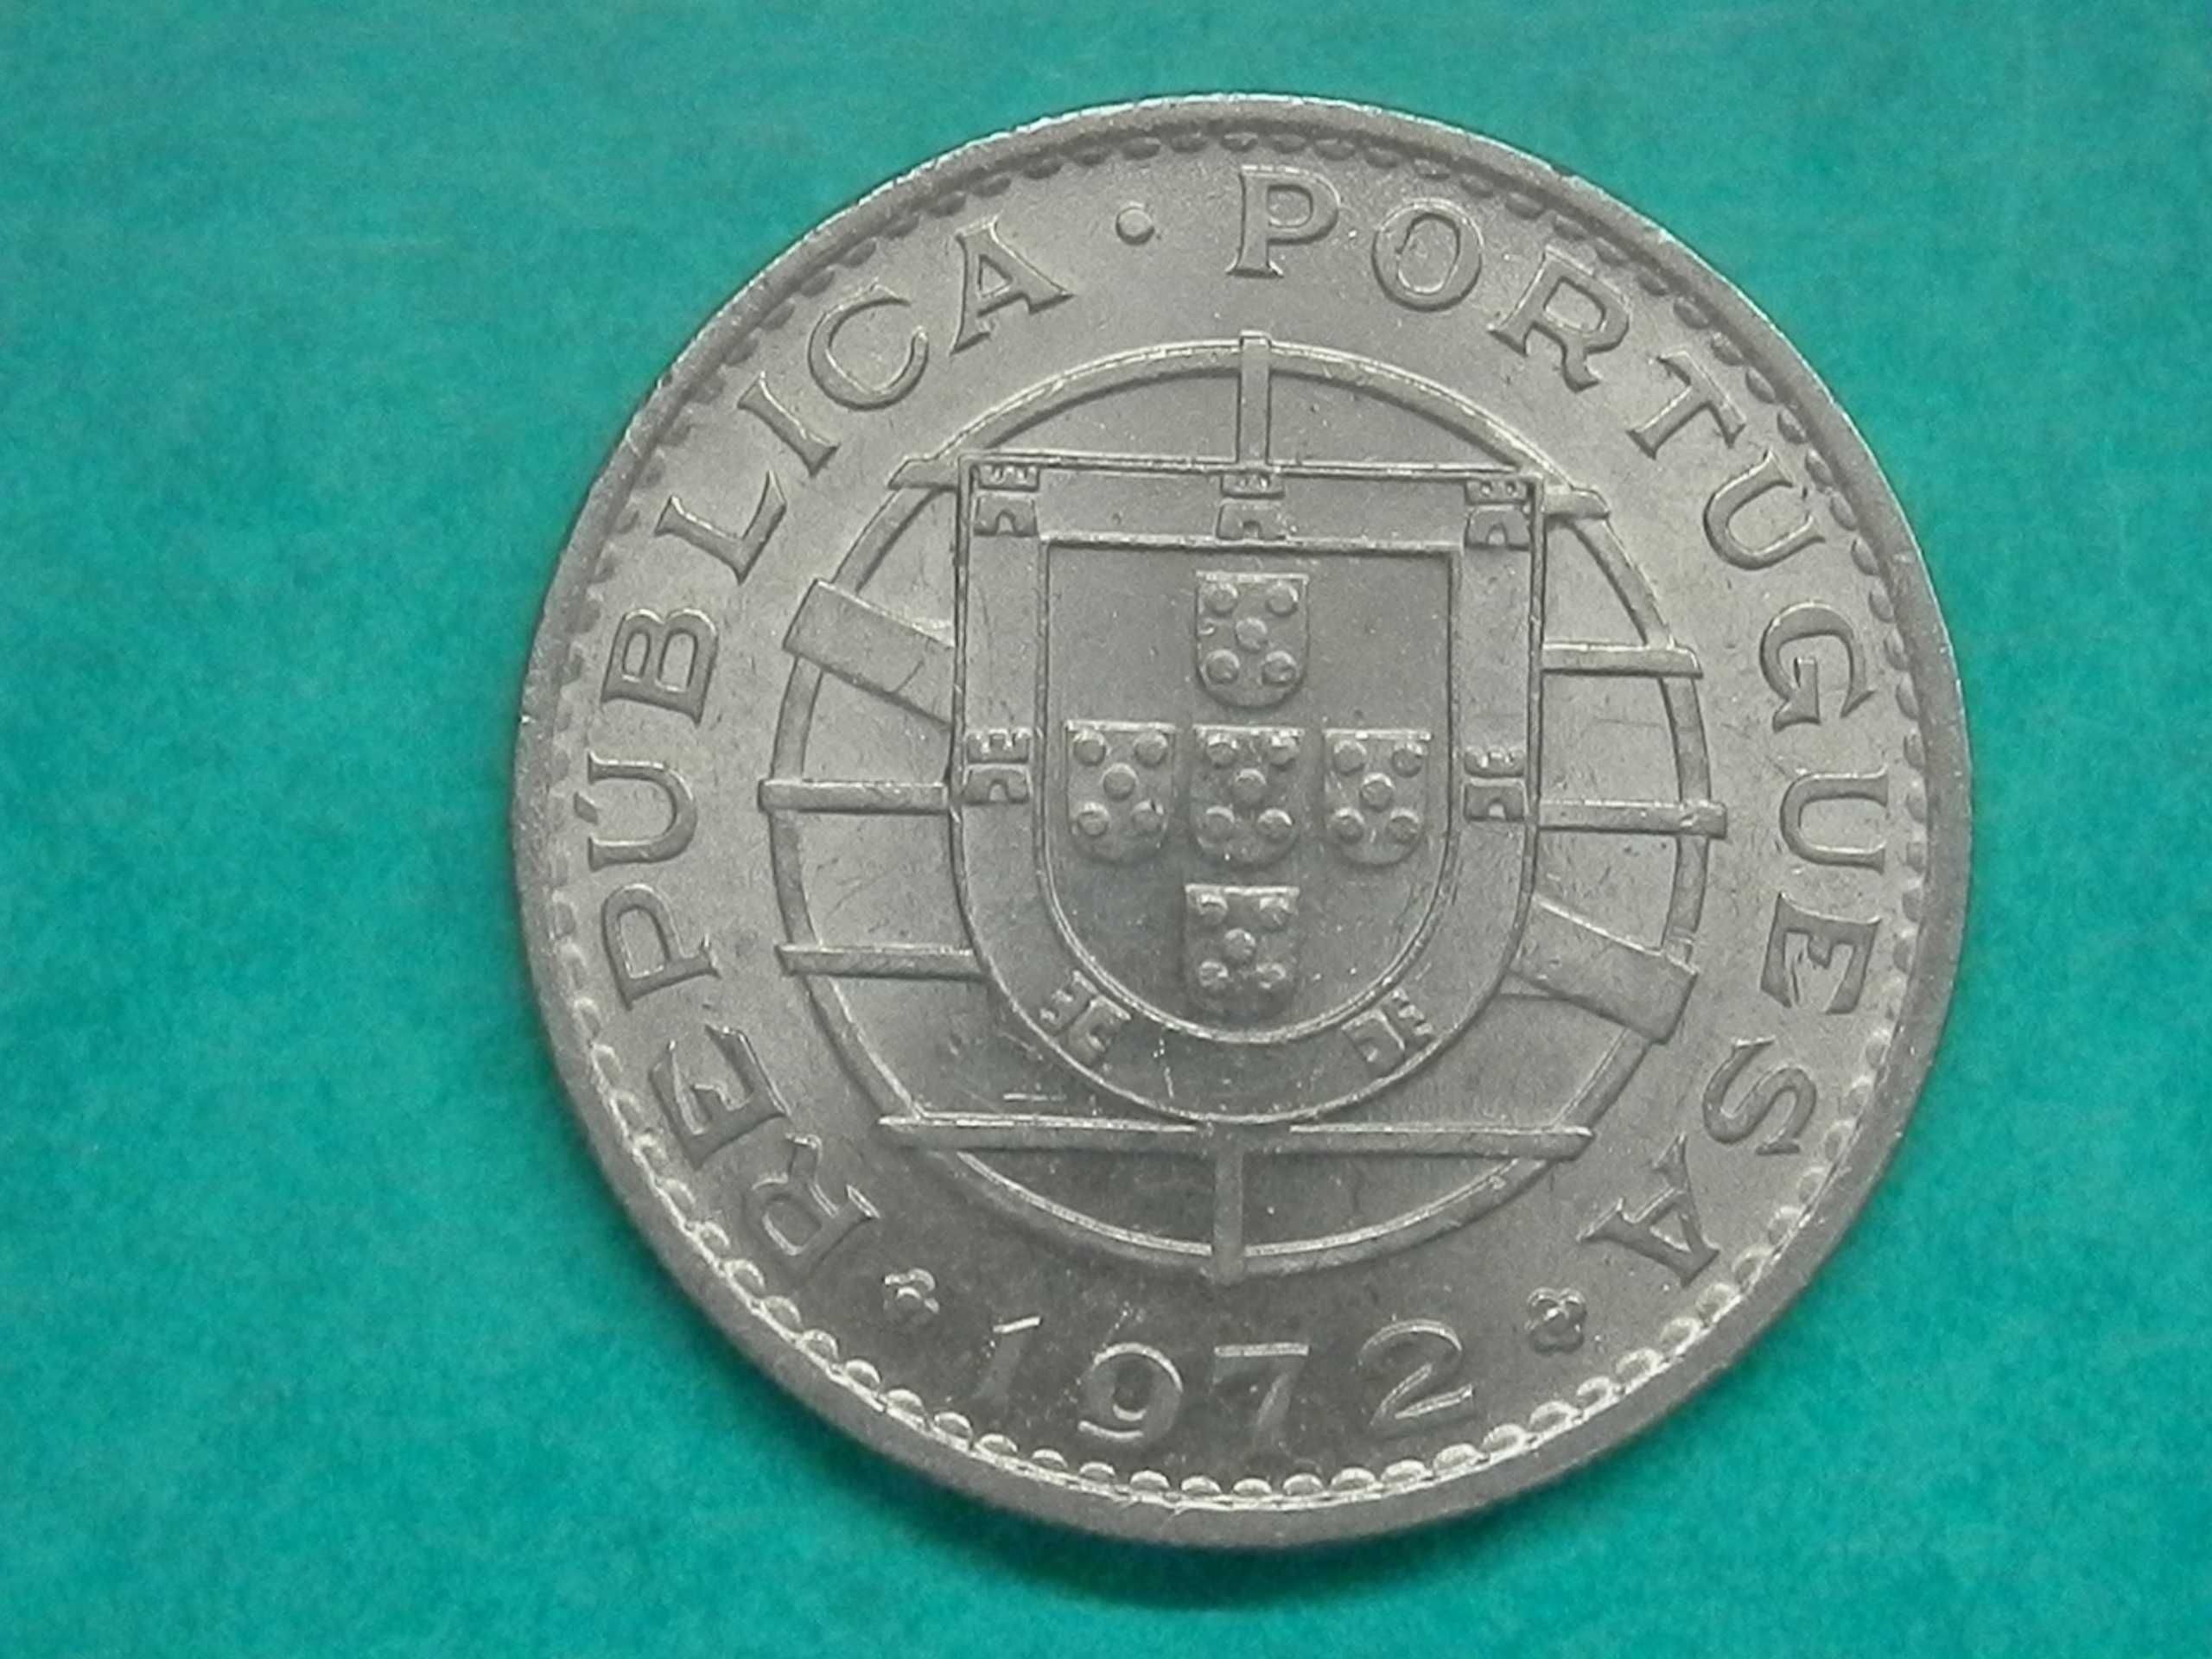 541 - Moçambique: 20$00 escudos 1972 níquel, por 4,00